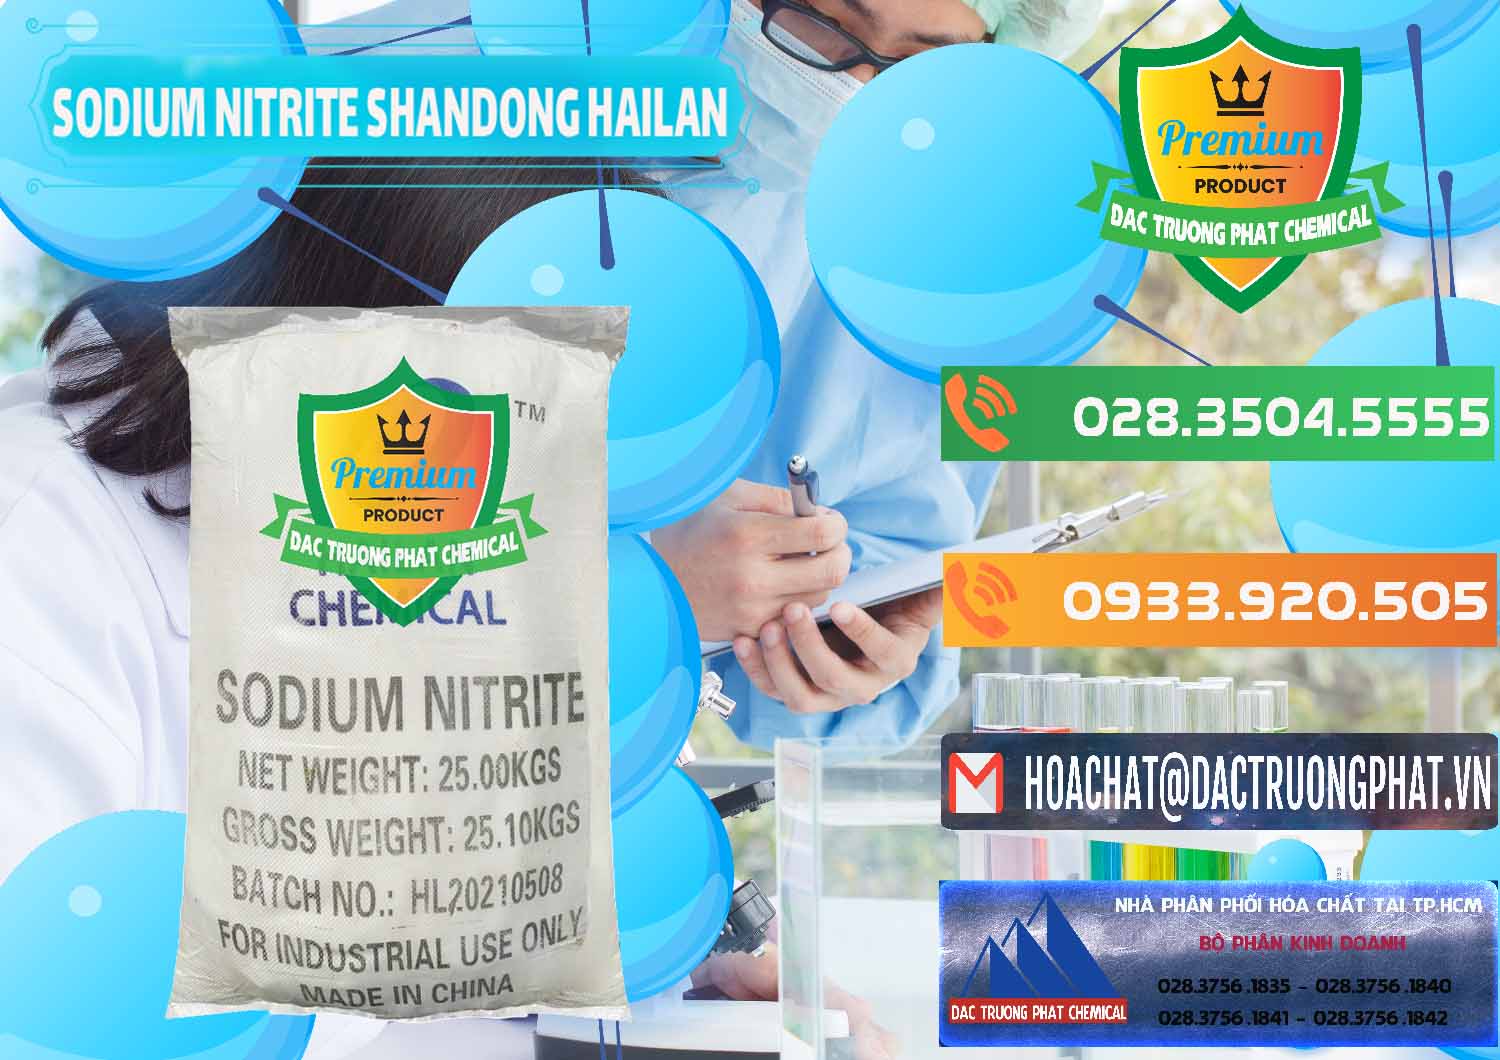 Cty chuyên bán ( phân phối ) Sodium Nitrite - NANO2 99.3% Shandong Hailan Trung Quốc China - 0284 - Cty phân phối & cung cấp hóa chất tại TP.HCM - hoachatxulynuoc.com.vn